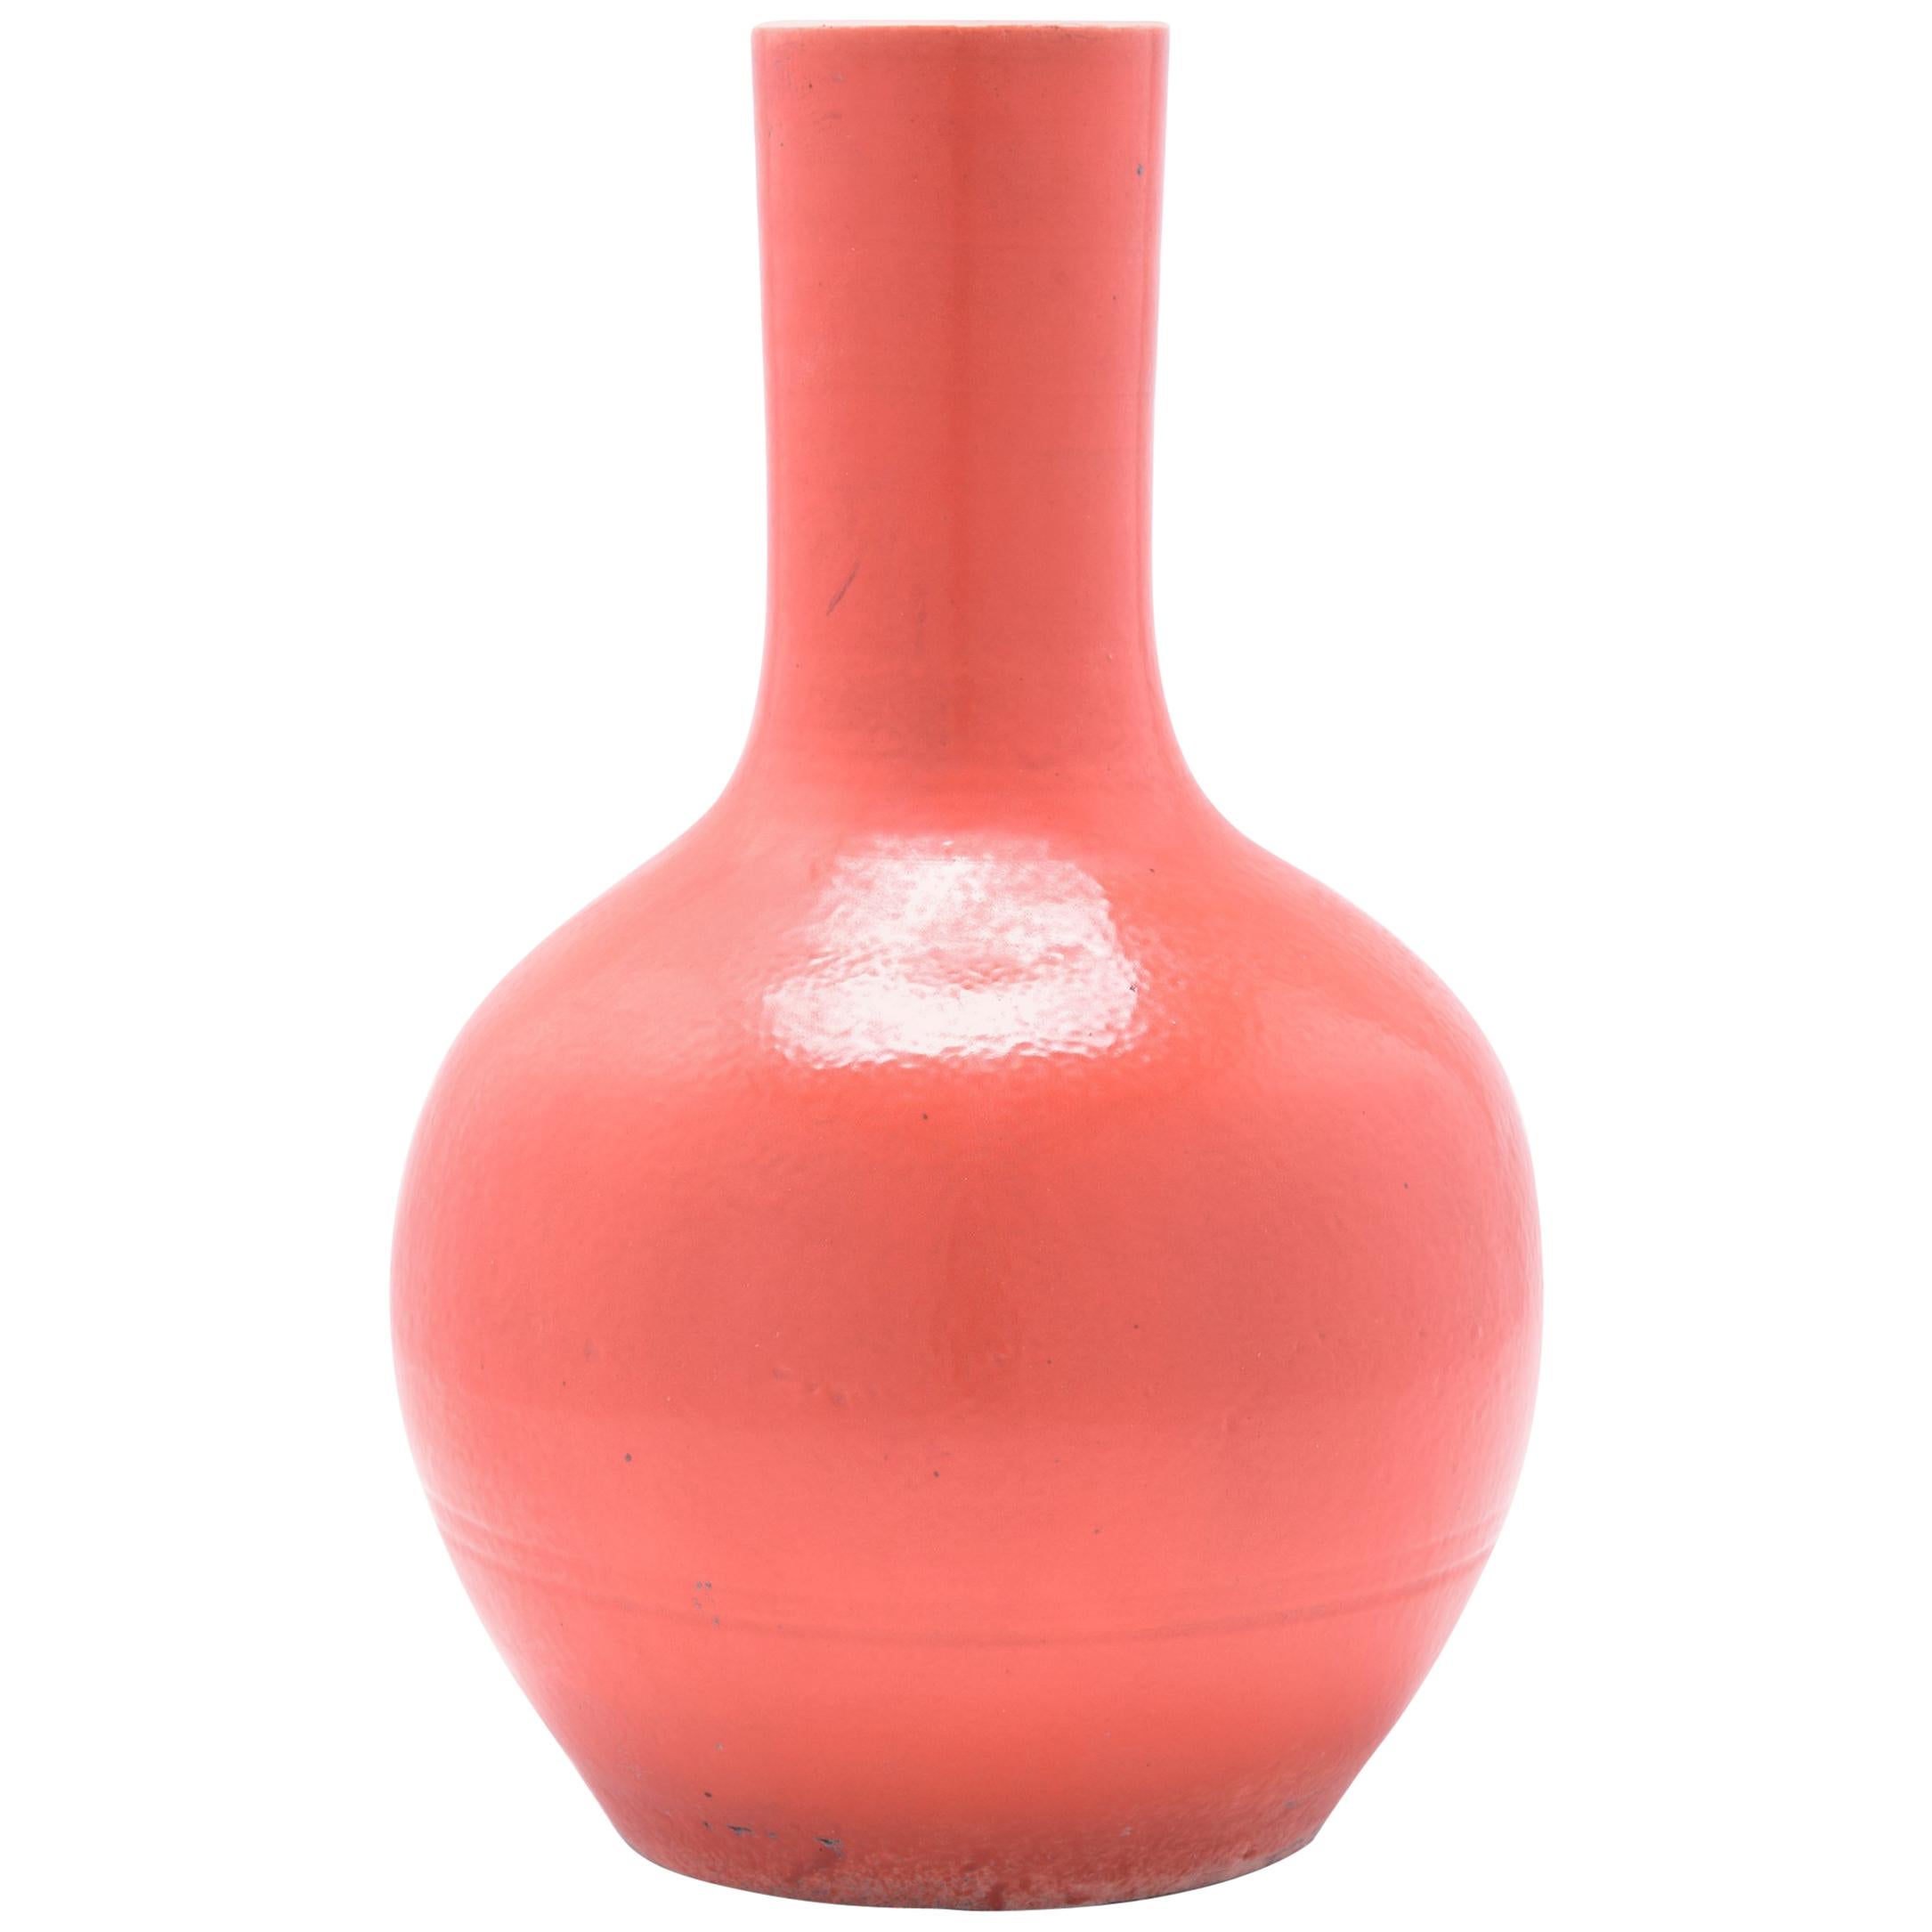 Persimmon Orange Bottleneck Vase For Sale